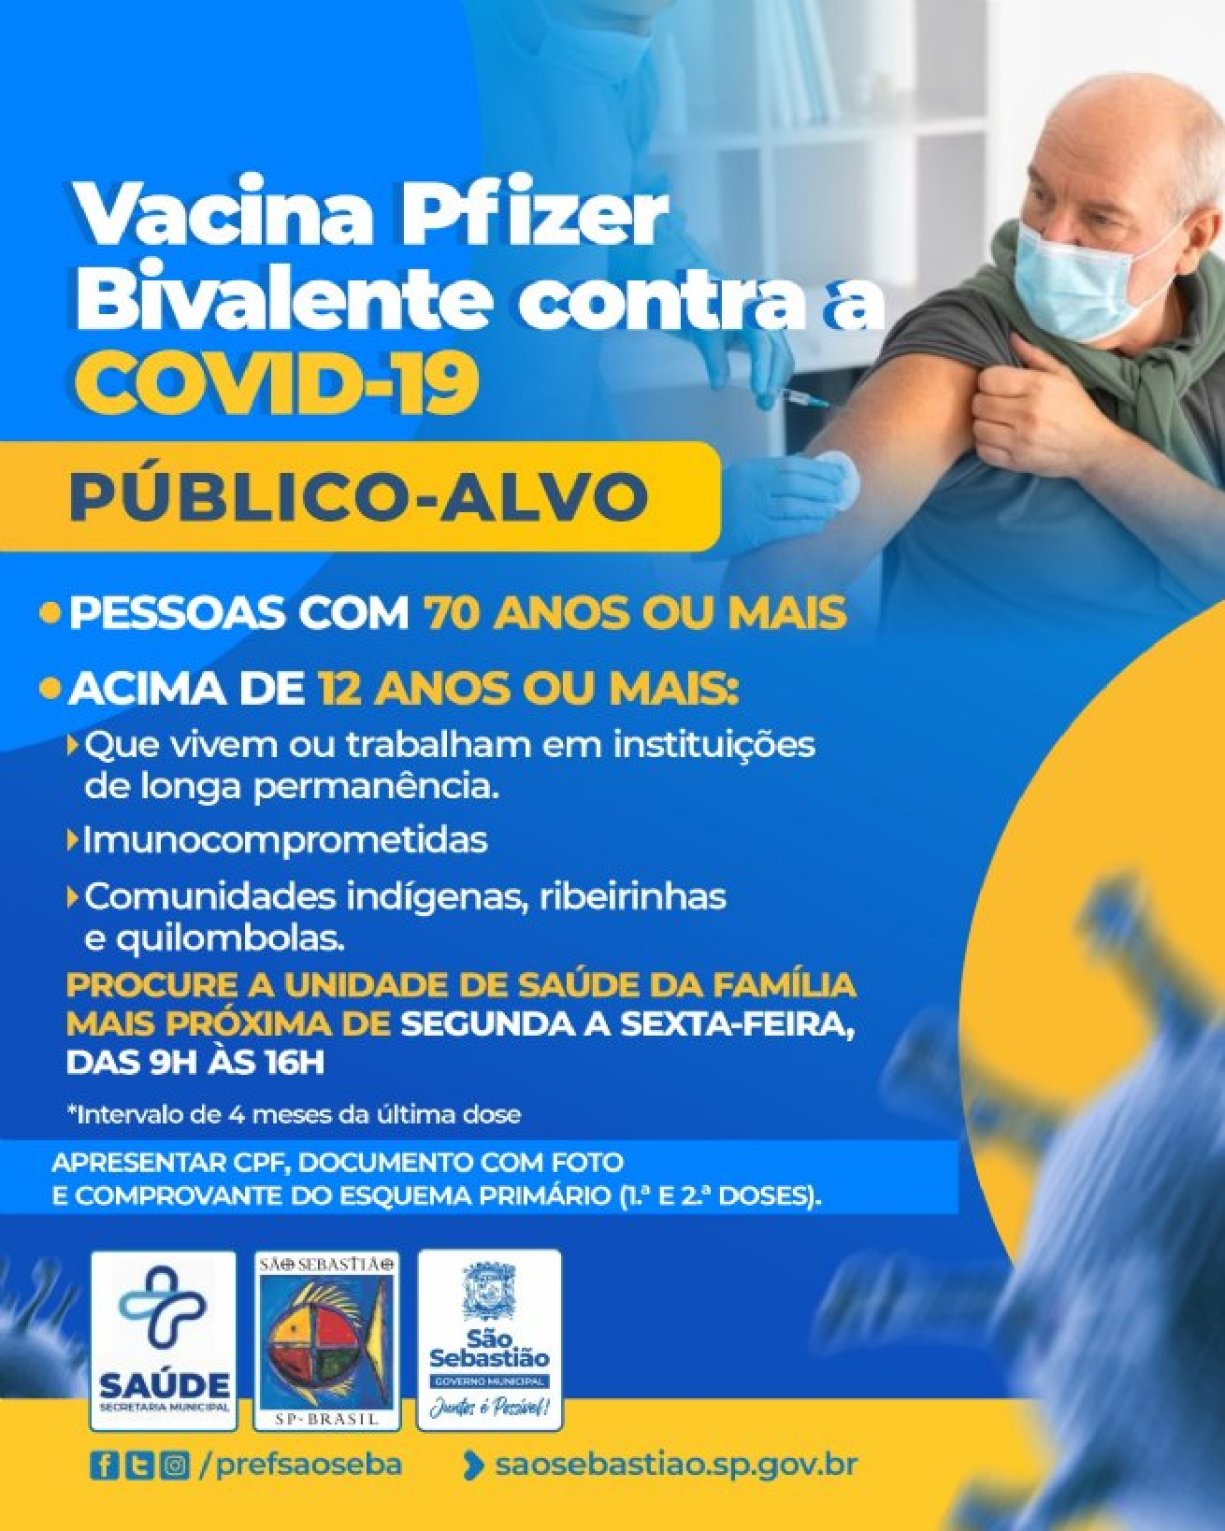 São Sebastião inicia vacinação contra a Covid-19 com doses da vacina bivalente